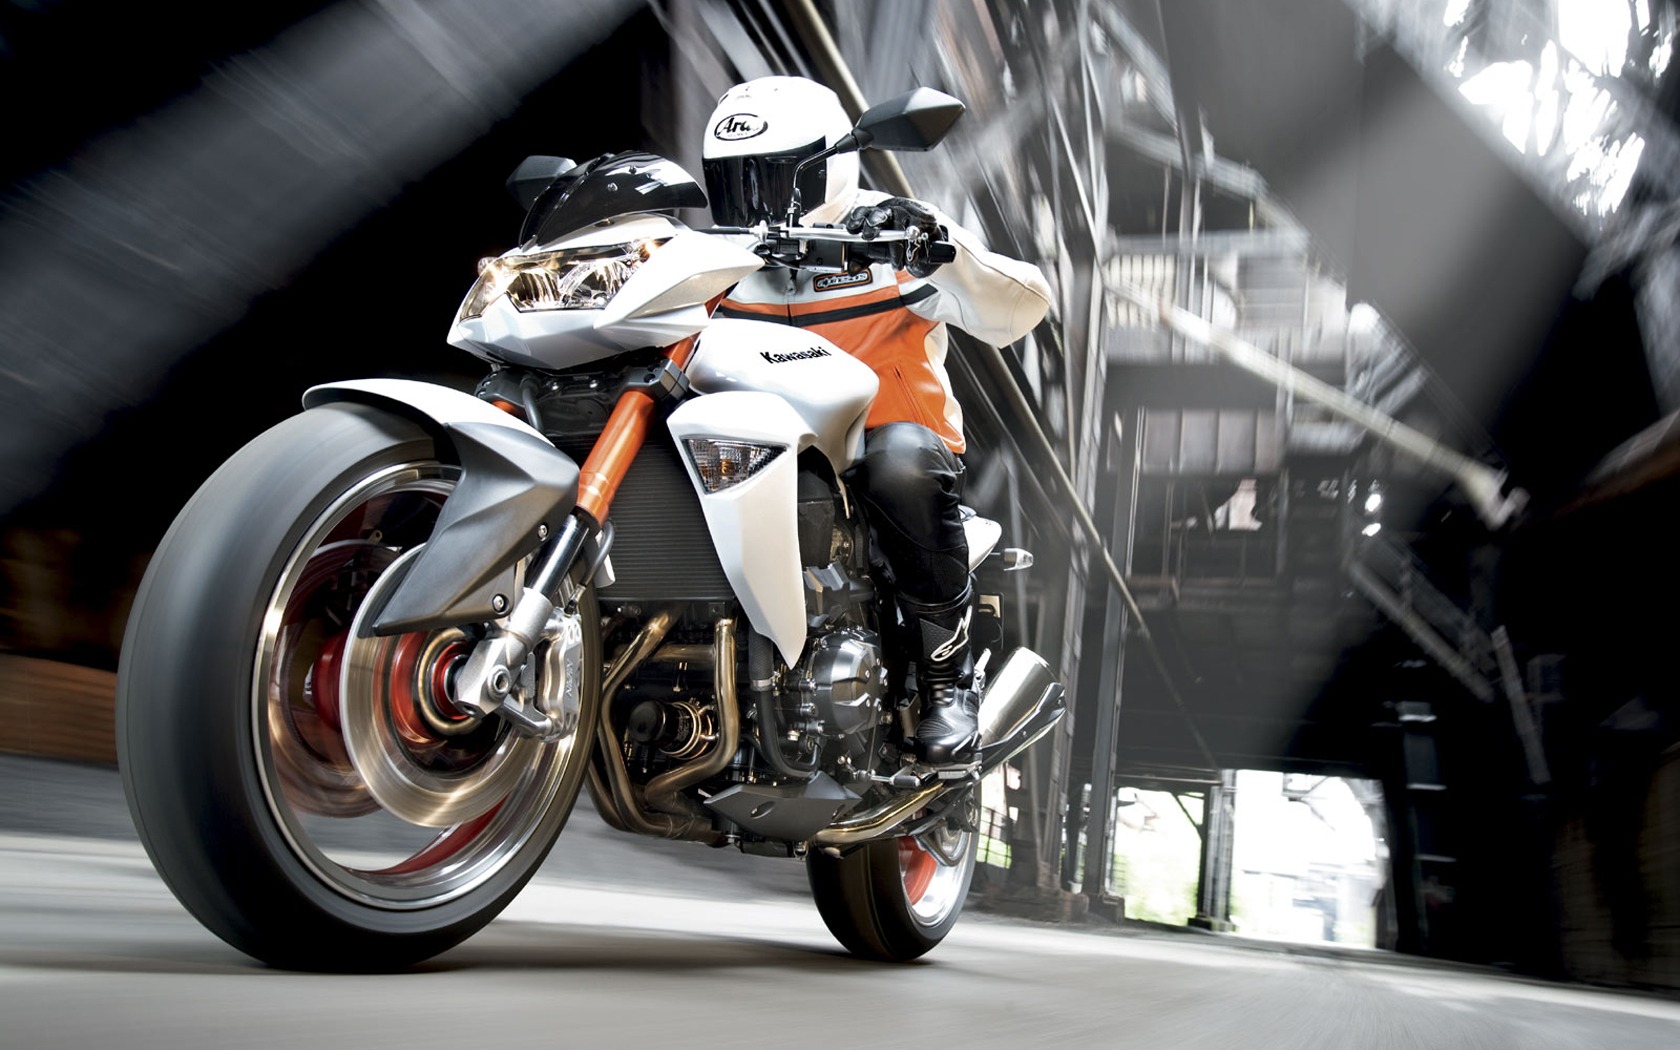 White Motorcycle Kawasaki Z1000 Wallpaper Desk High